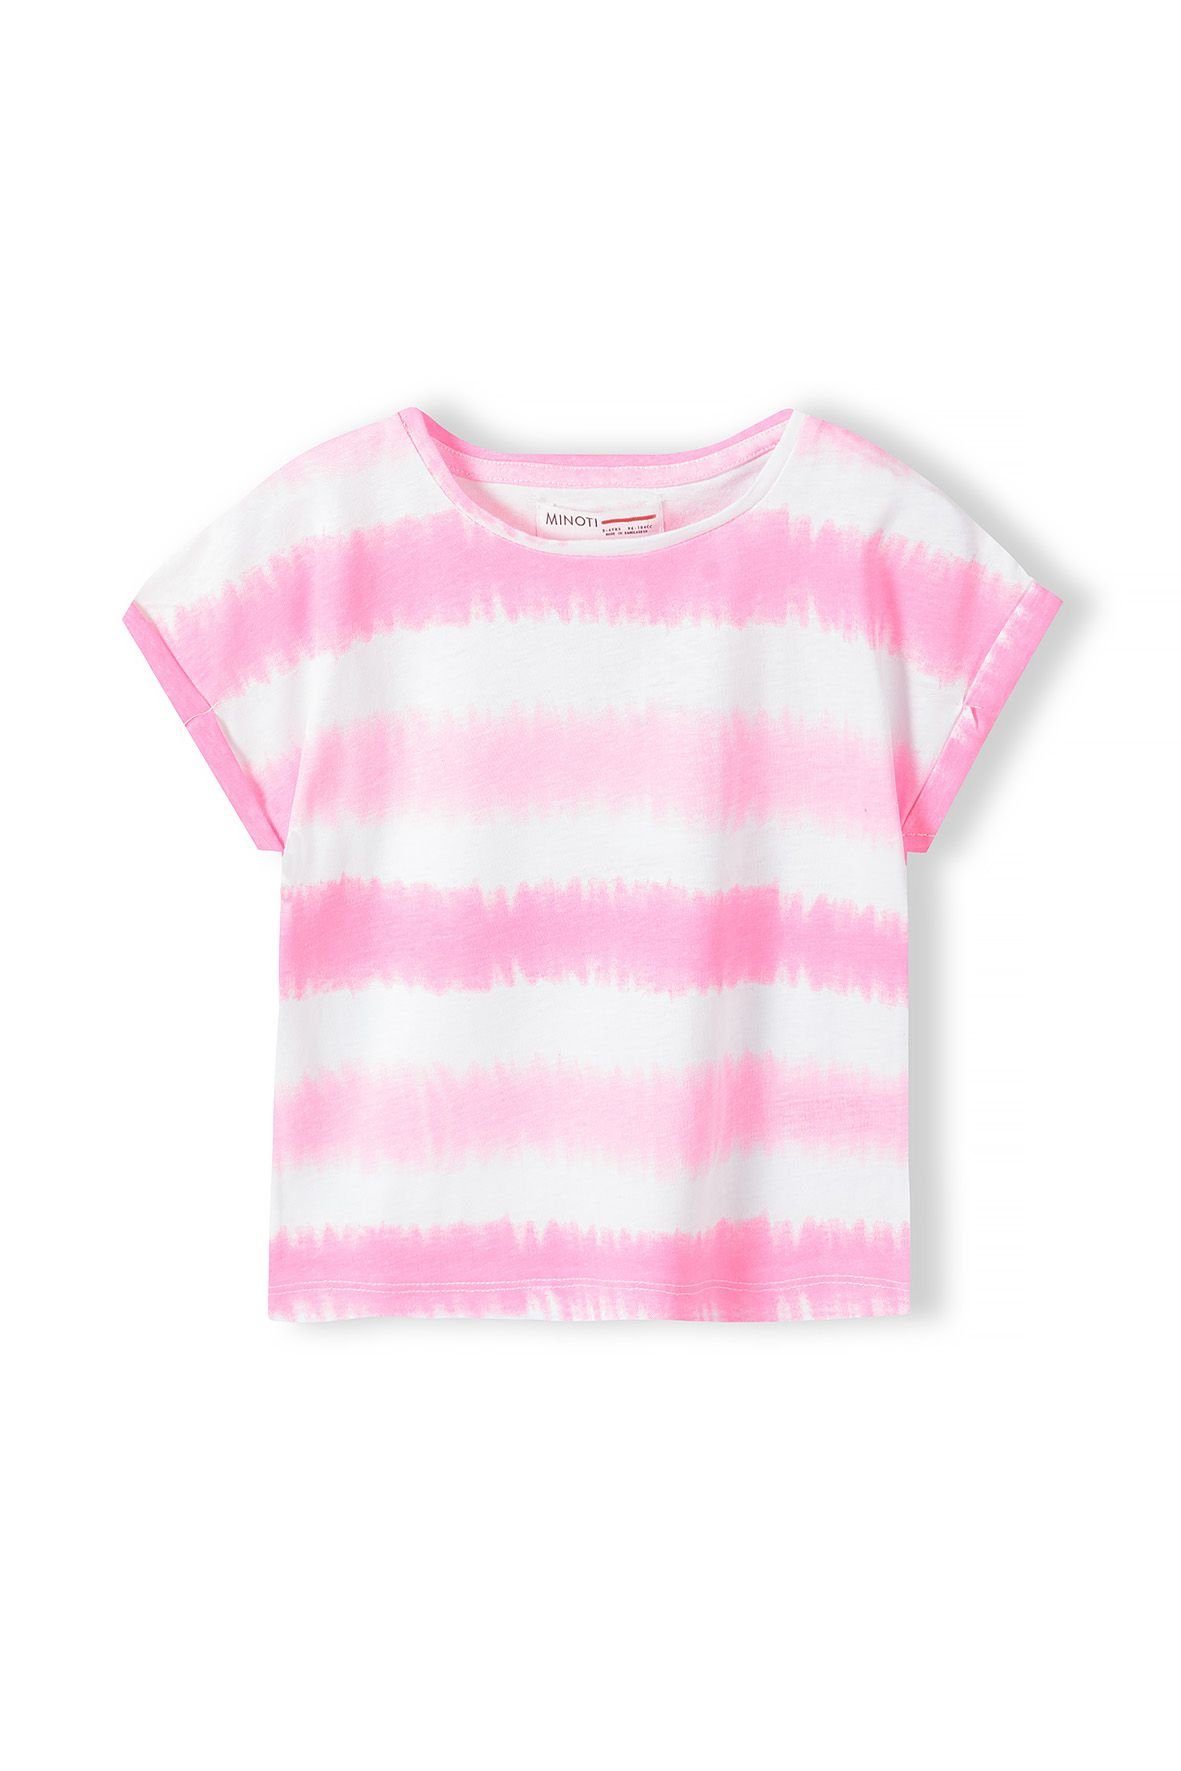 MINOTI T-Shirt Rosa mit T-Shirt Aufdruck Modisches (1y-8y)